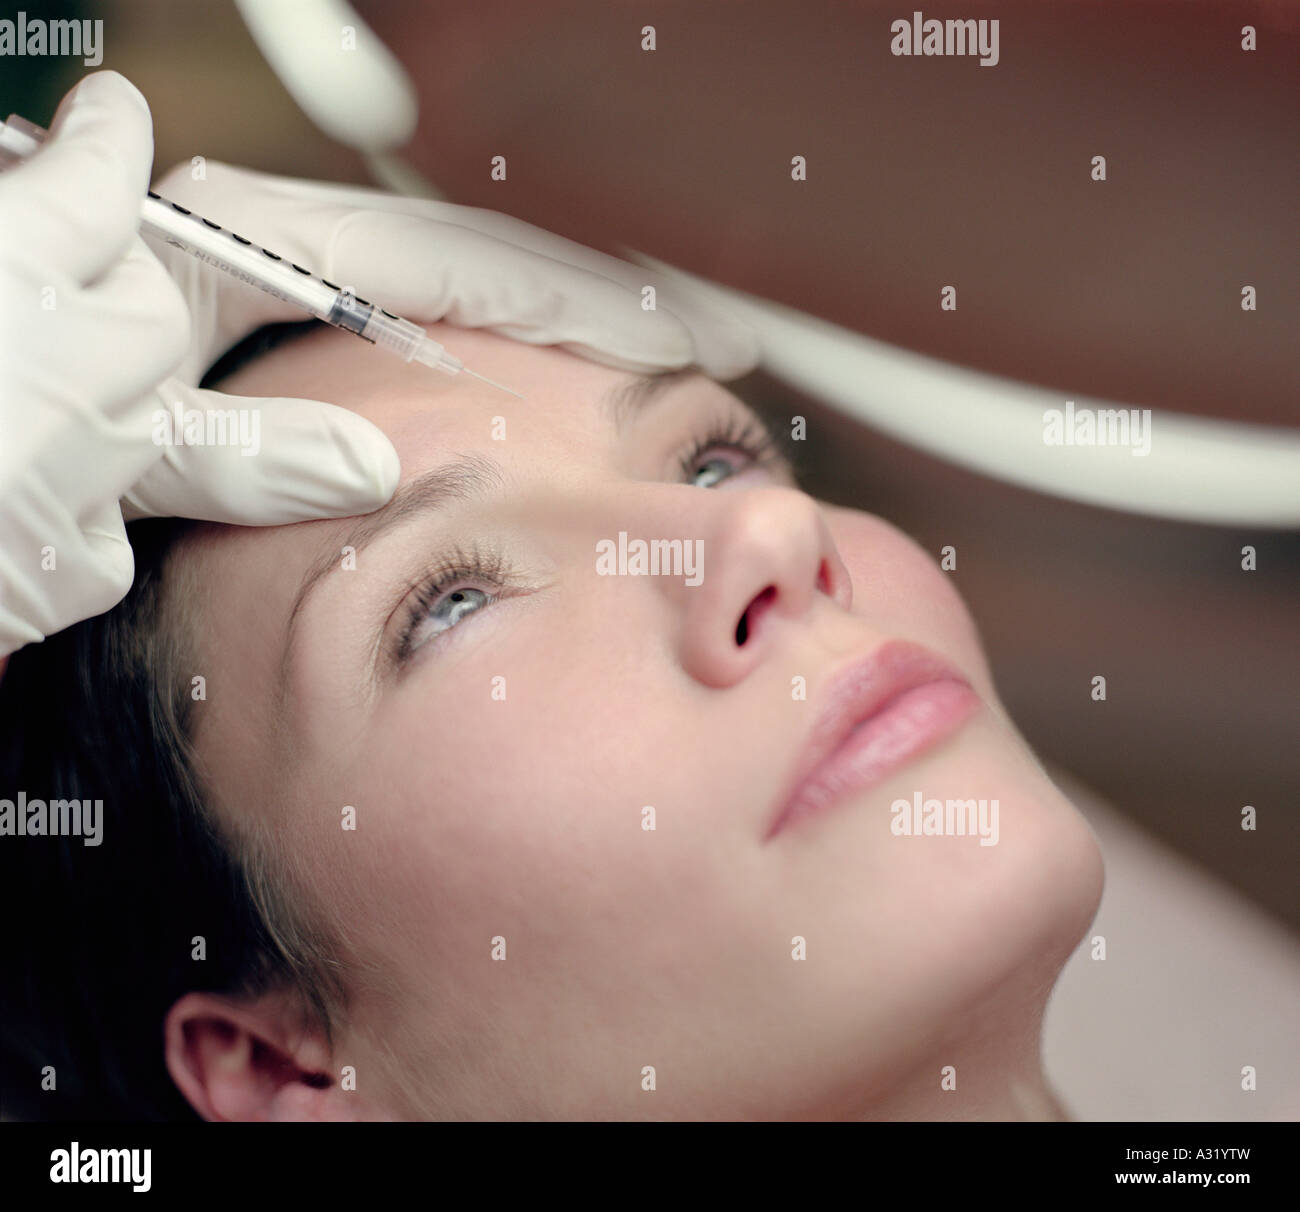 La donna riceve una iniezione di Botox Foto Stock